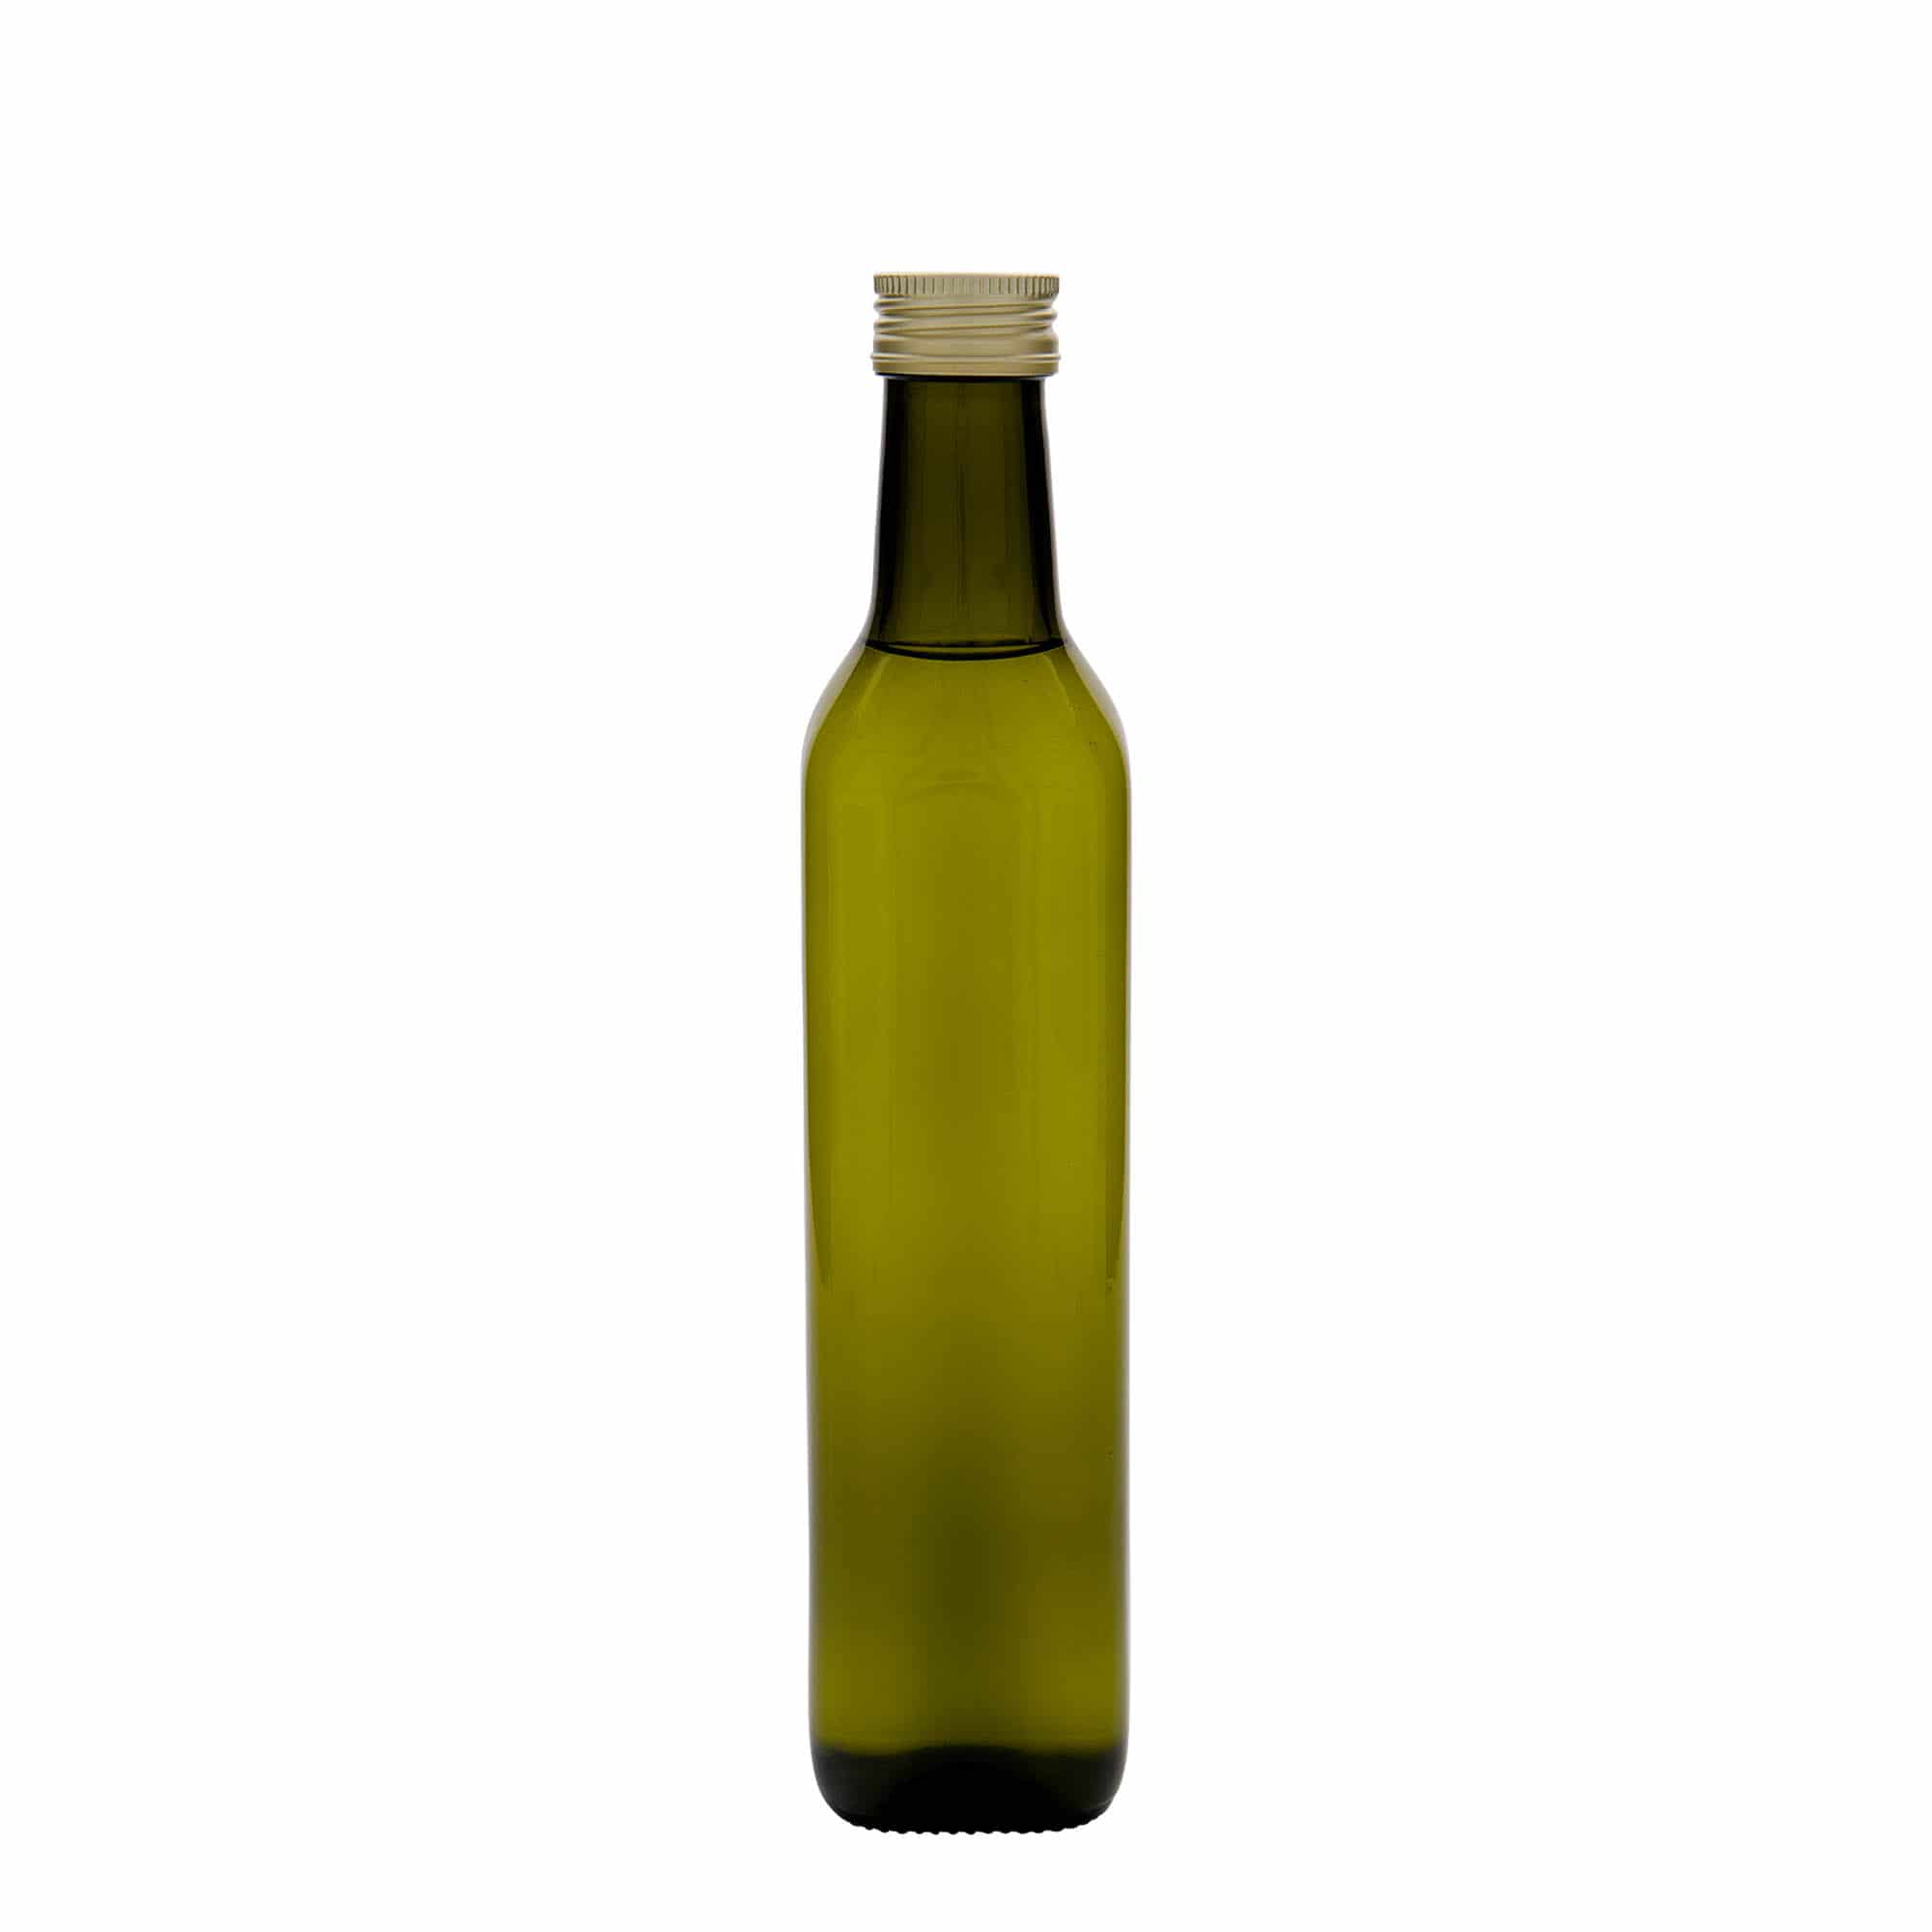 500 ml lasipullo 'Marasca', neliö, antiikinvihreä, suu: PP 31,5